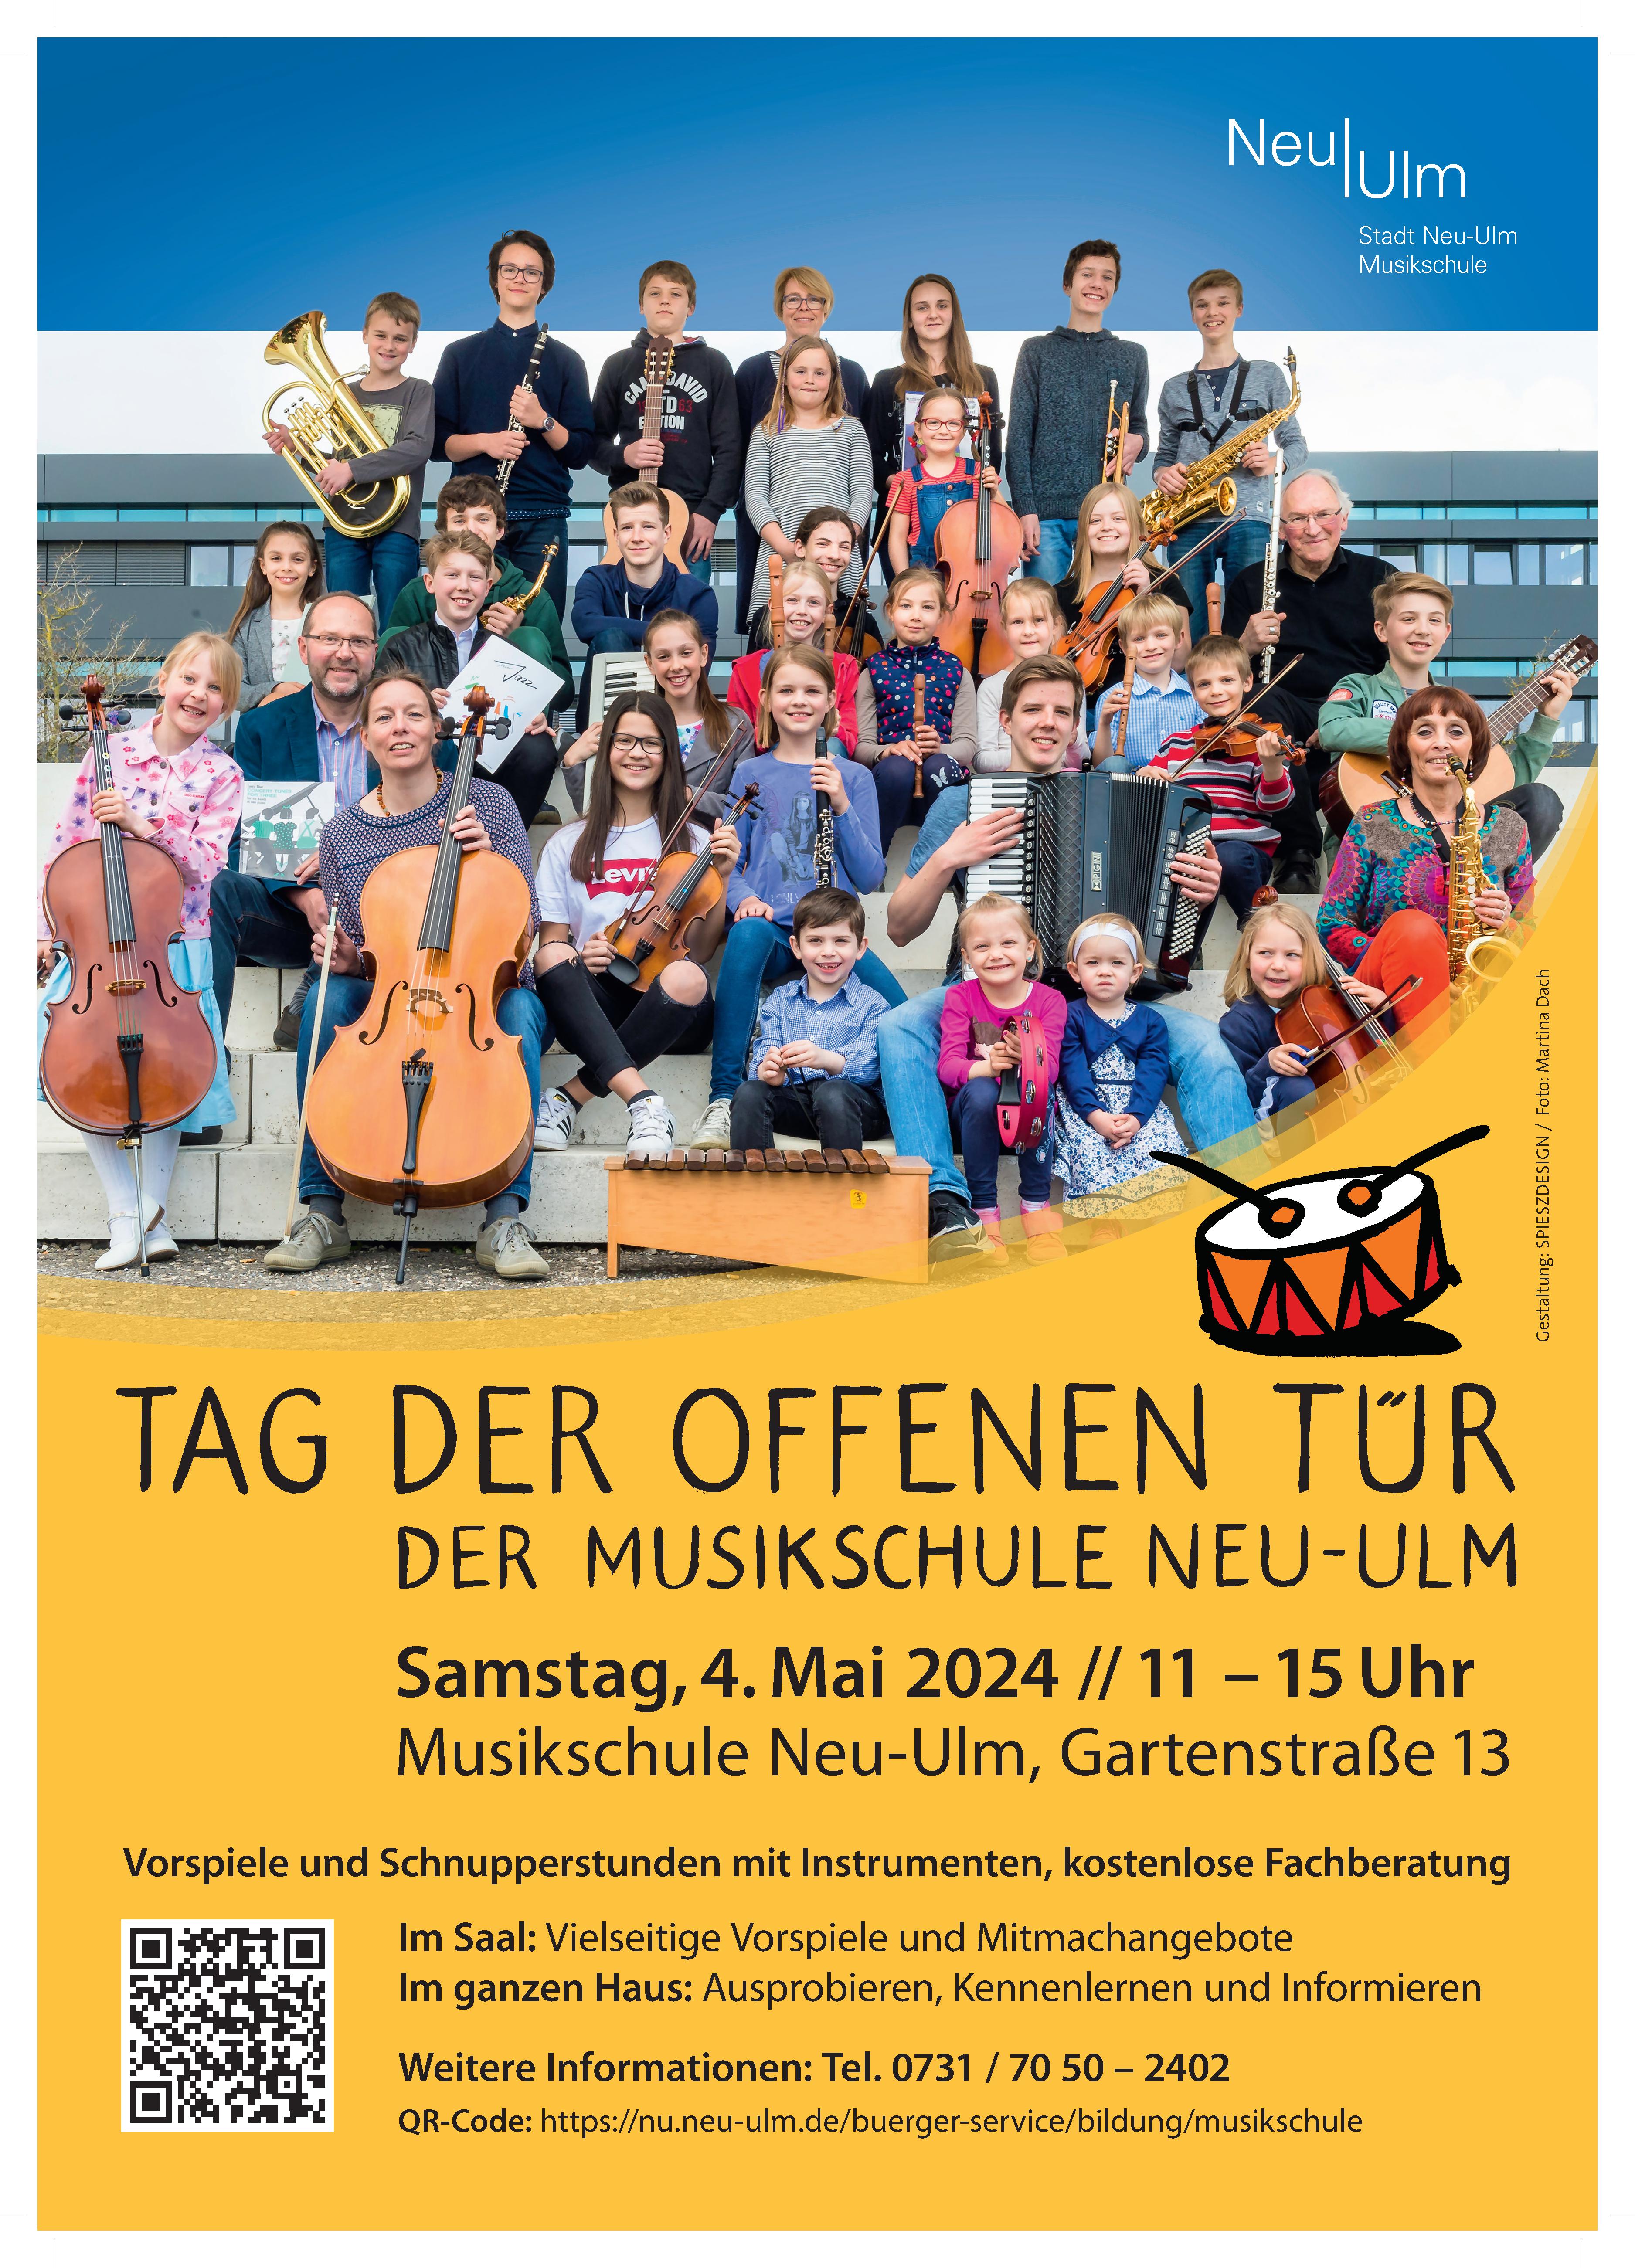 Tag der offenen Tür der Musikschule Neu-Ulm